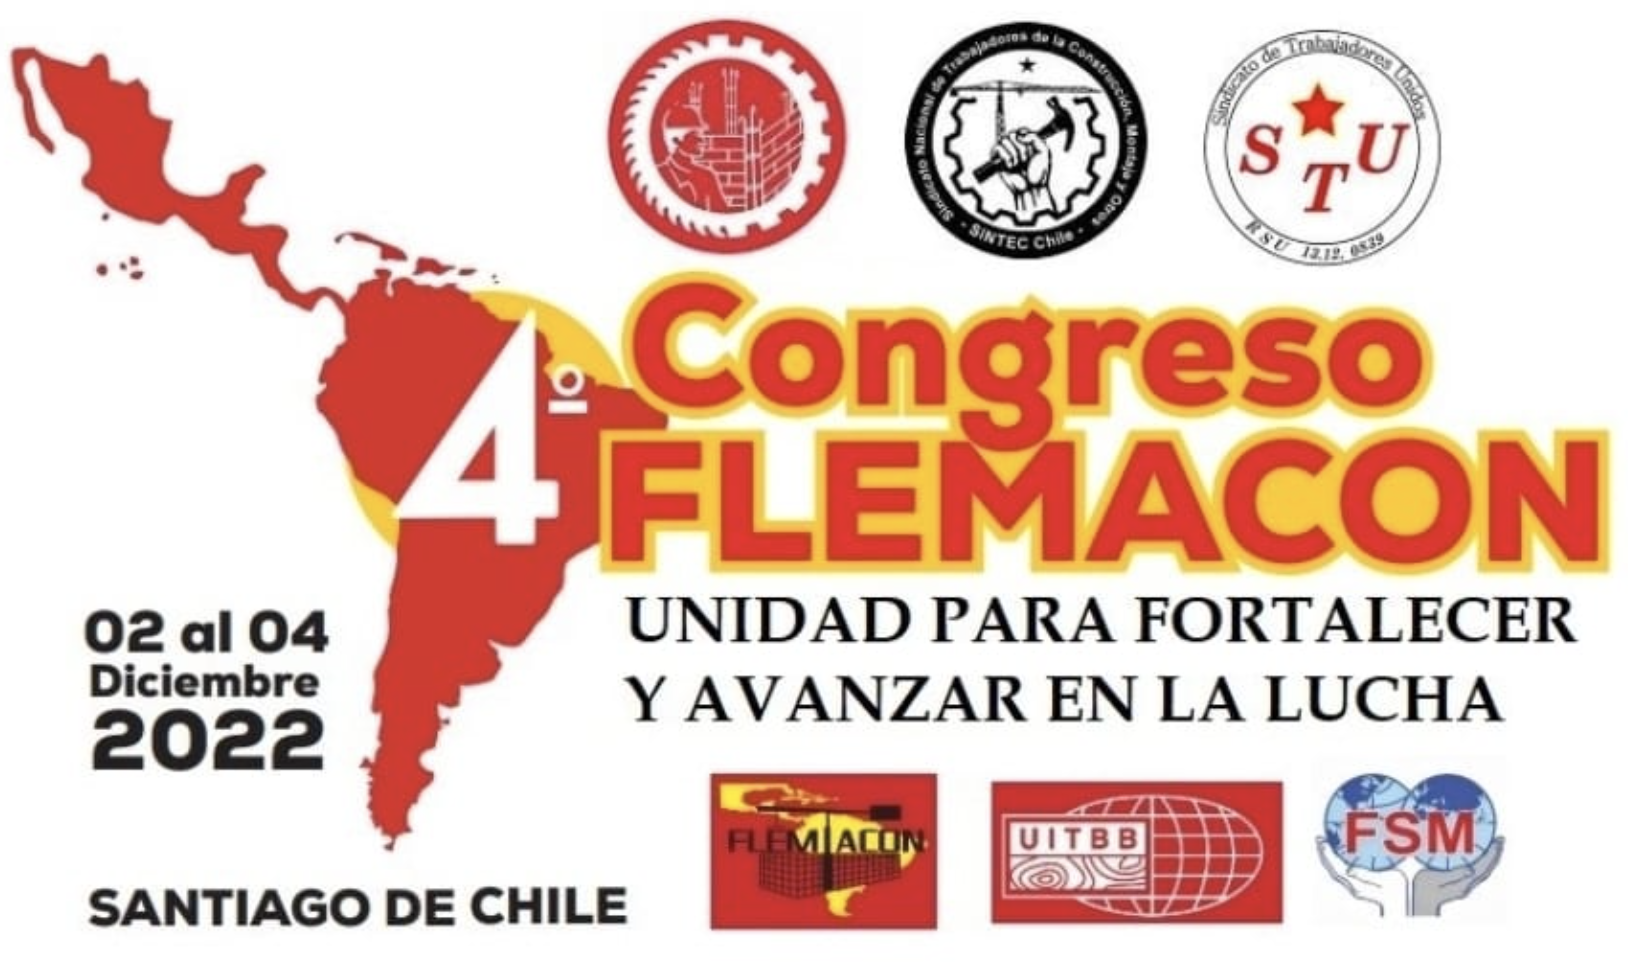 Congreso Internacional de Trabajadores de la Construcción, Chile 2022 Flemacon